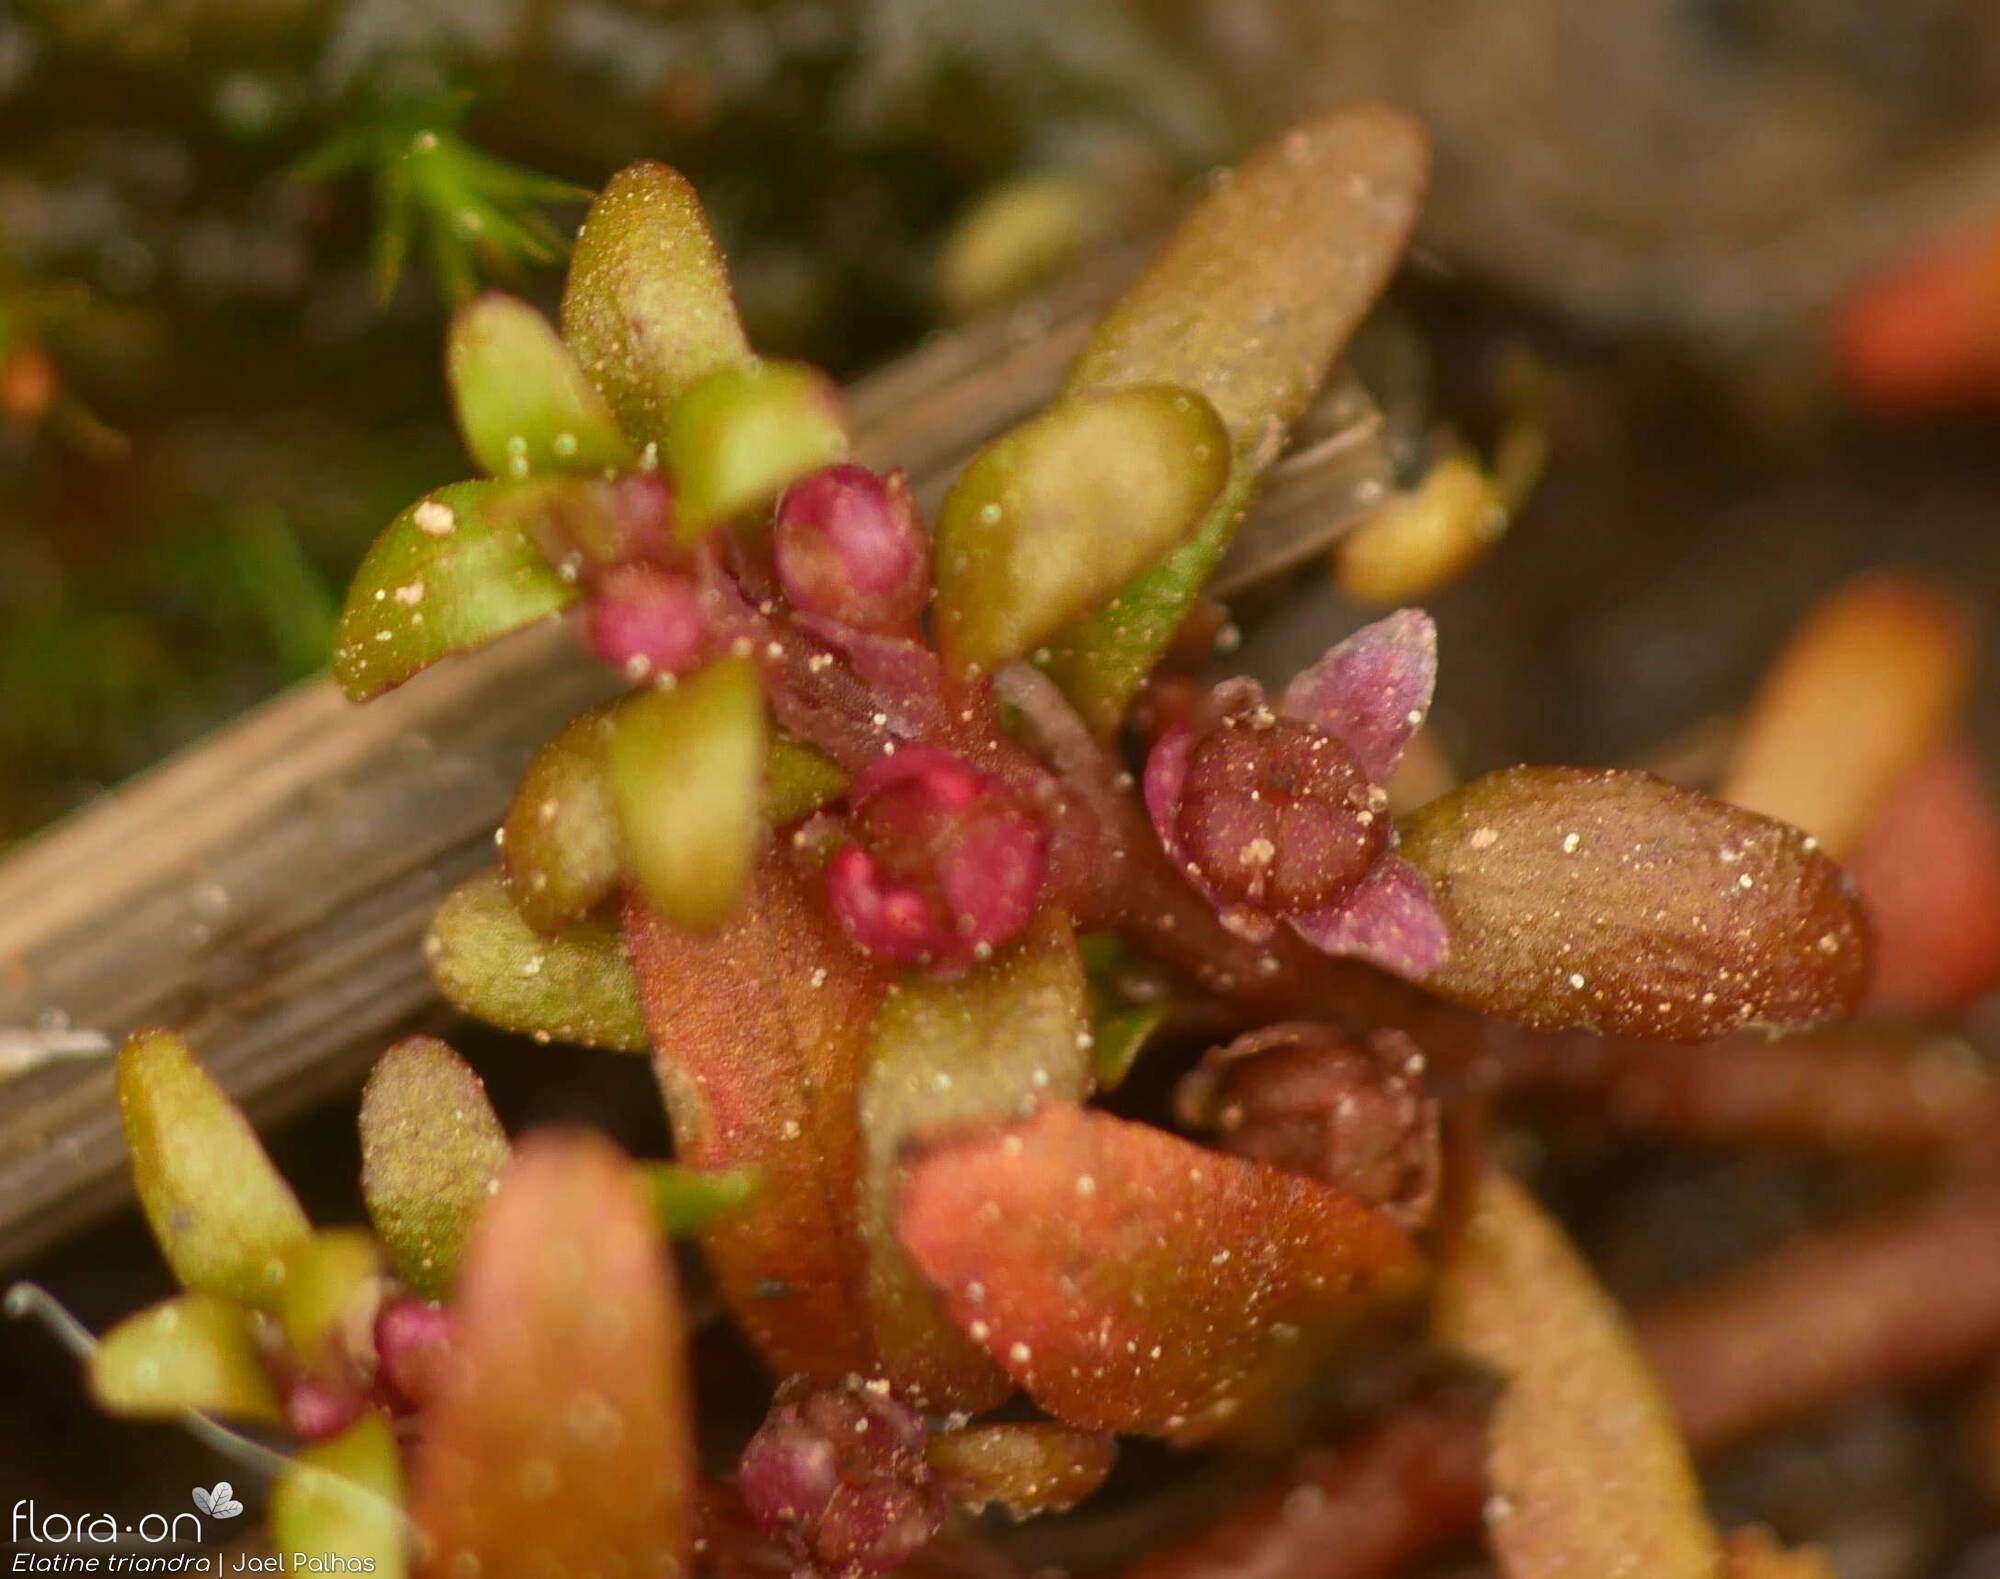 Elatine triandra - Flor (close-up) | Jael Palhas; CC BY-NC 4.0